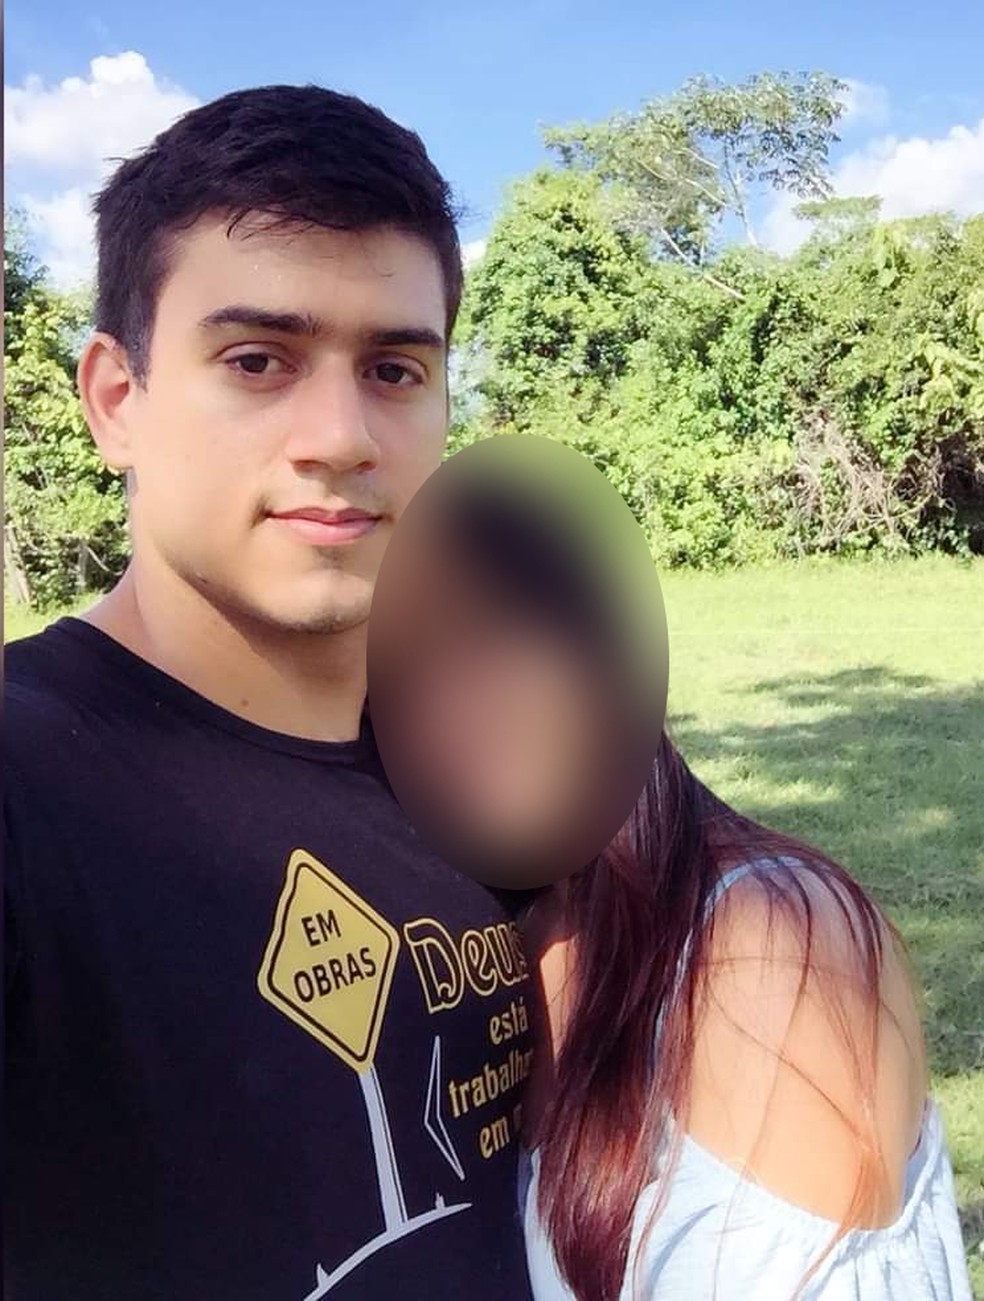 Jovem morre eletrocutado durante instalação de forro em casa em MT | Mato Grosso | G1